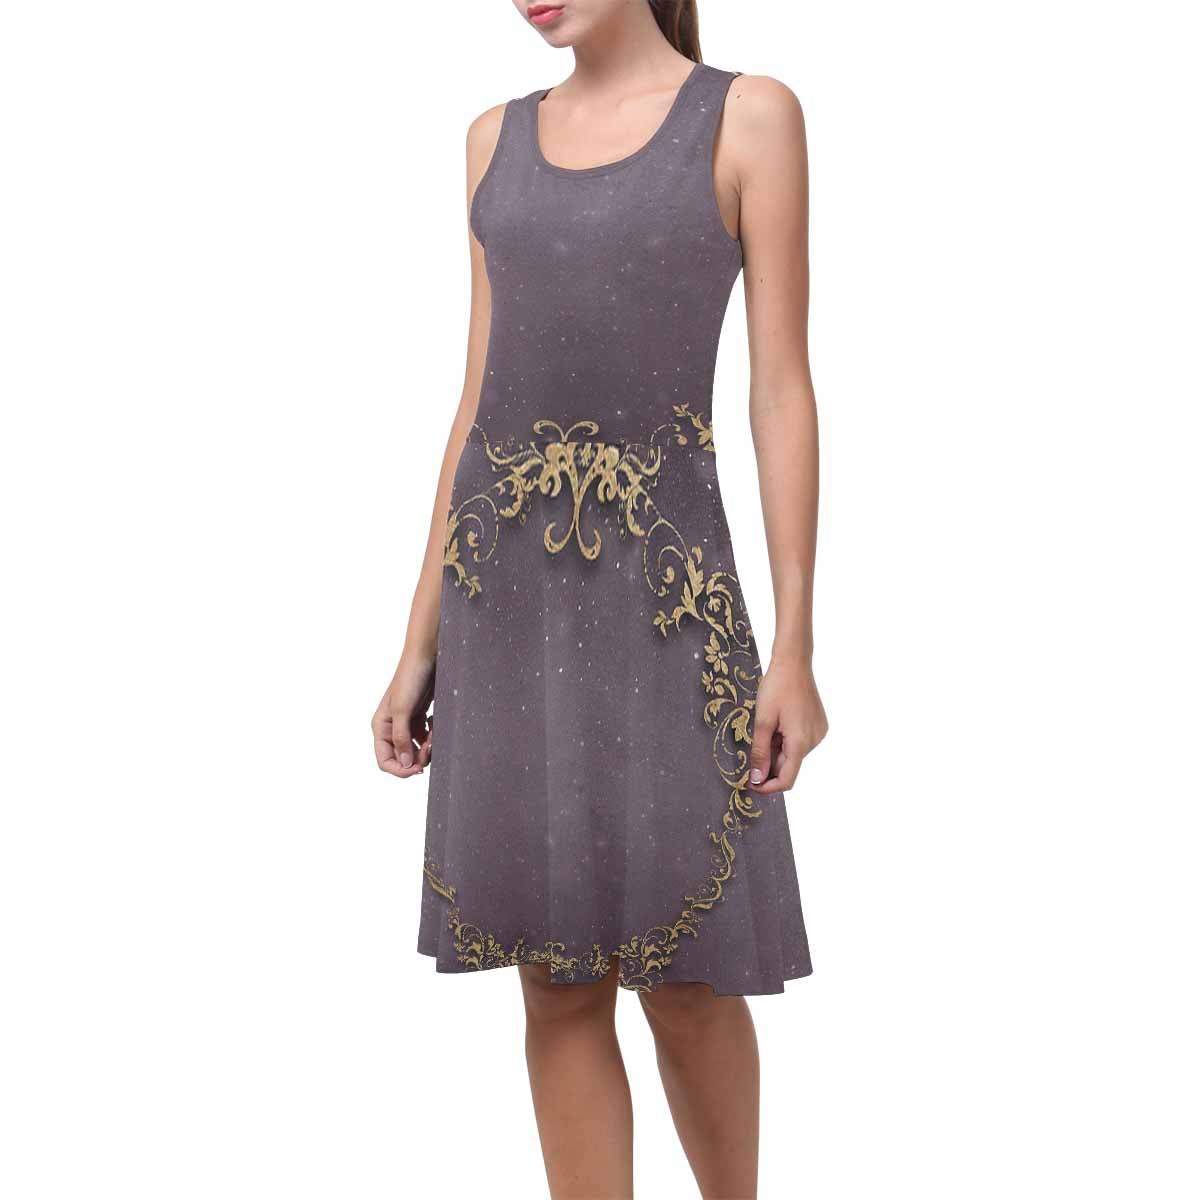 Antique General summer dress, MODEL 09534, design 43